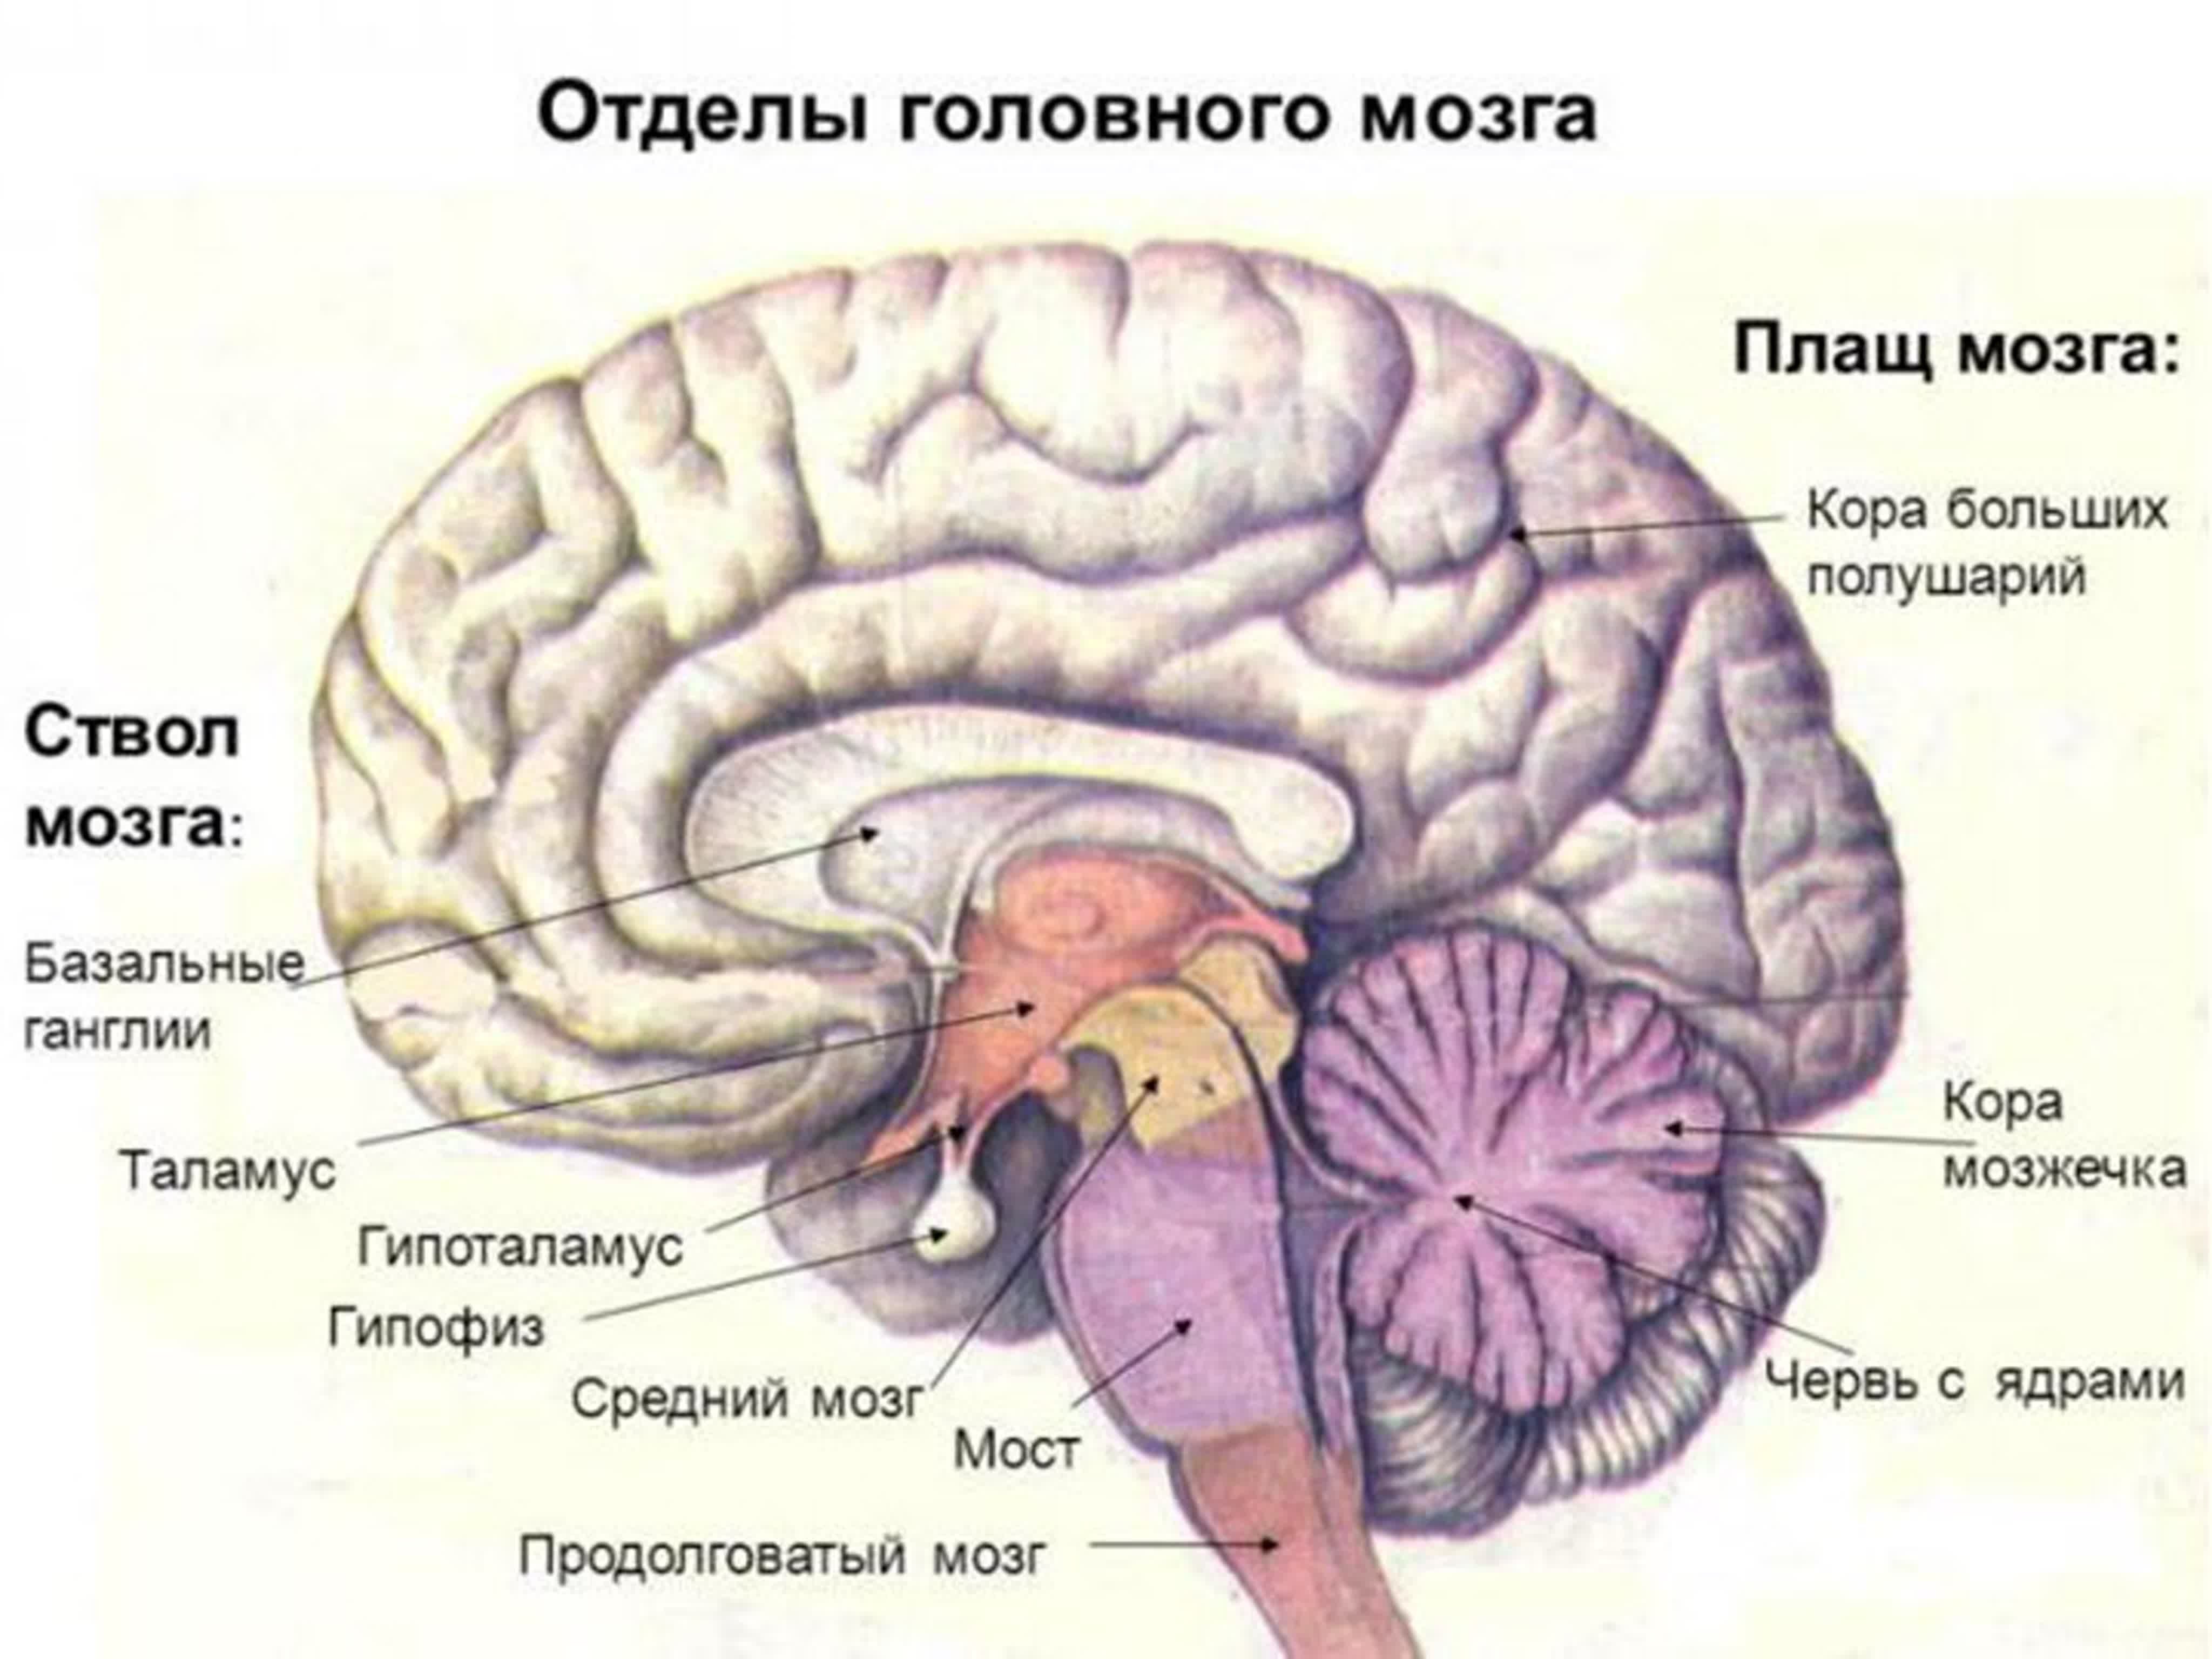 Мозжечок центры рефлексов. Функции отделов головного мозга рисунок. Функции отделов головного мозга анатомия. Отделы головного мозга и основные структуры отделов. Отделы головного мозга.строение больших полушарий.